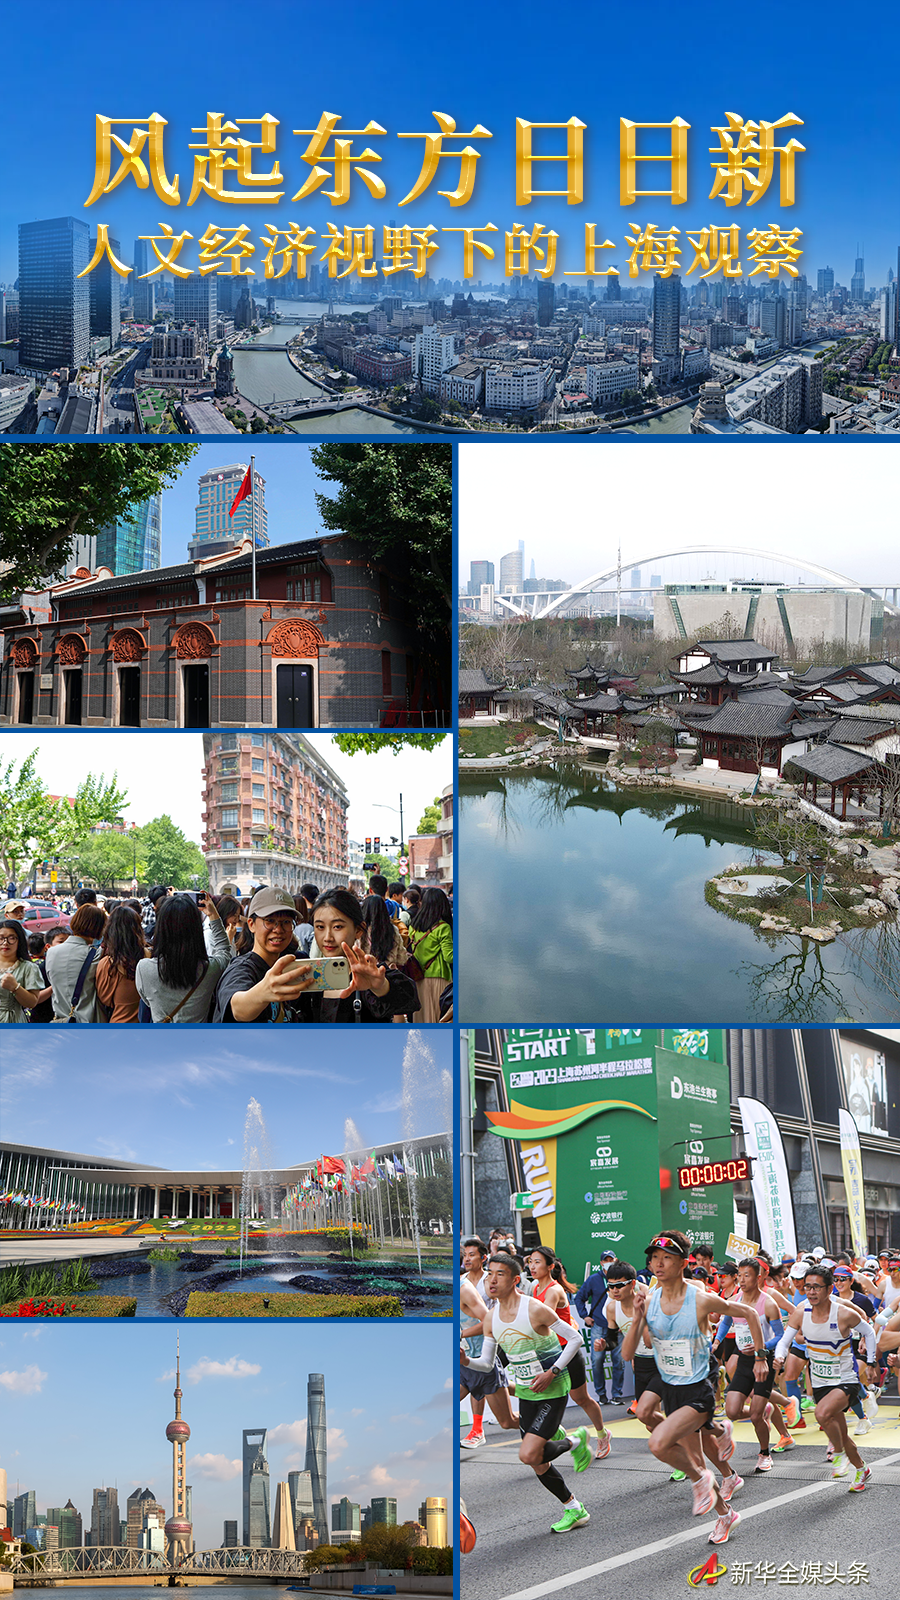 風起東方日日新——人文經濟視野下的上海觀察